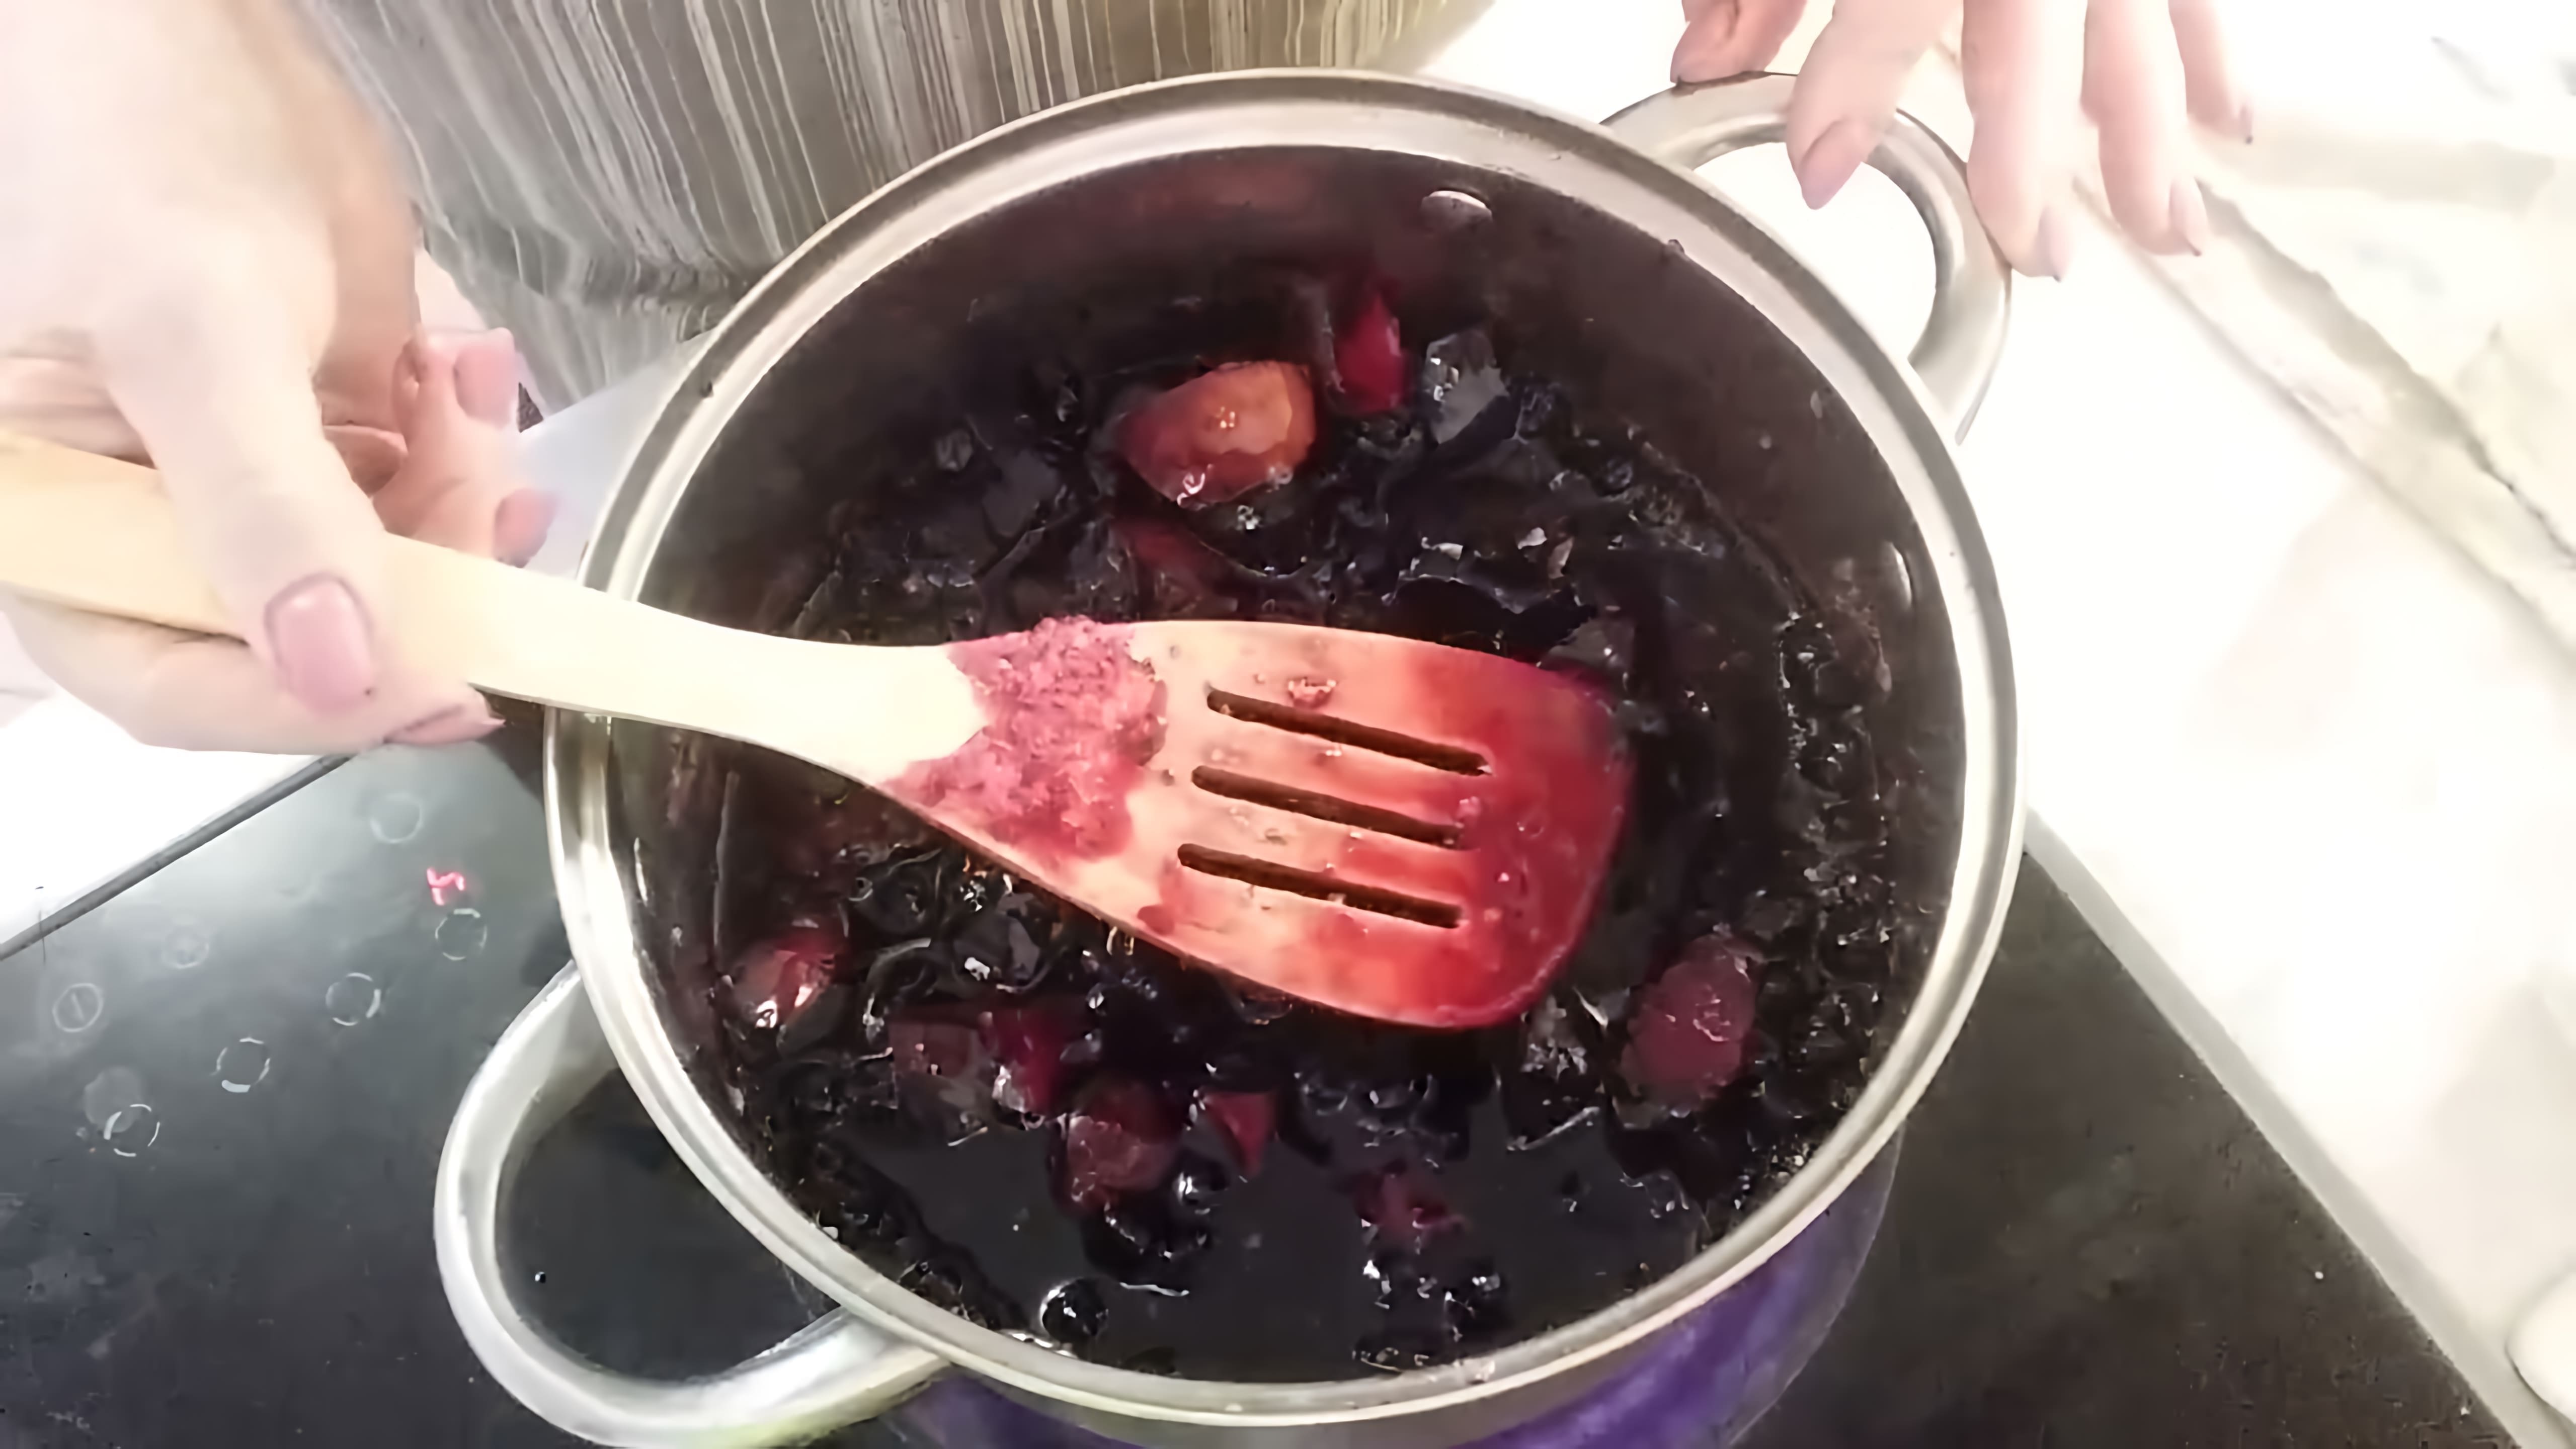 В этом видео демонстрируется процесс приготовления варенья из яблок и черноплодной рябины без добавления воды